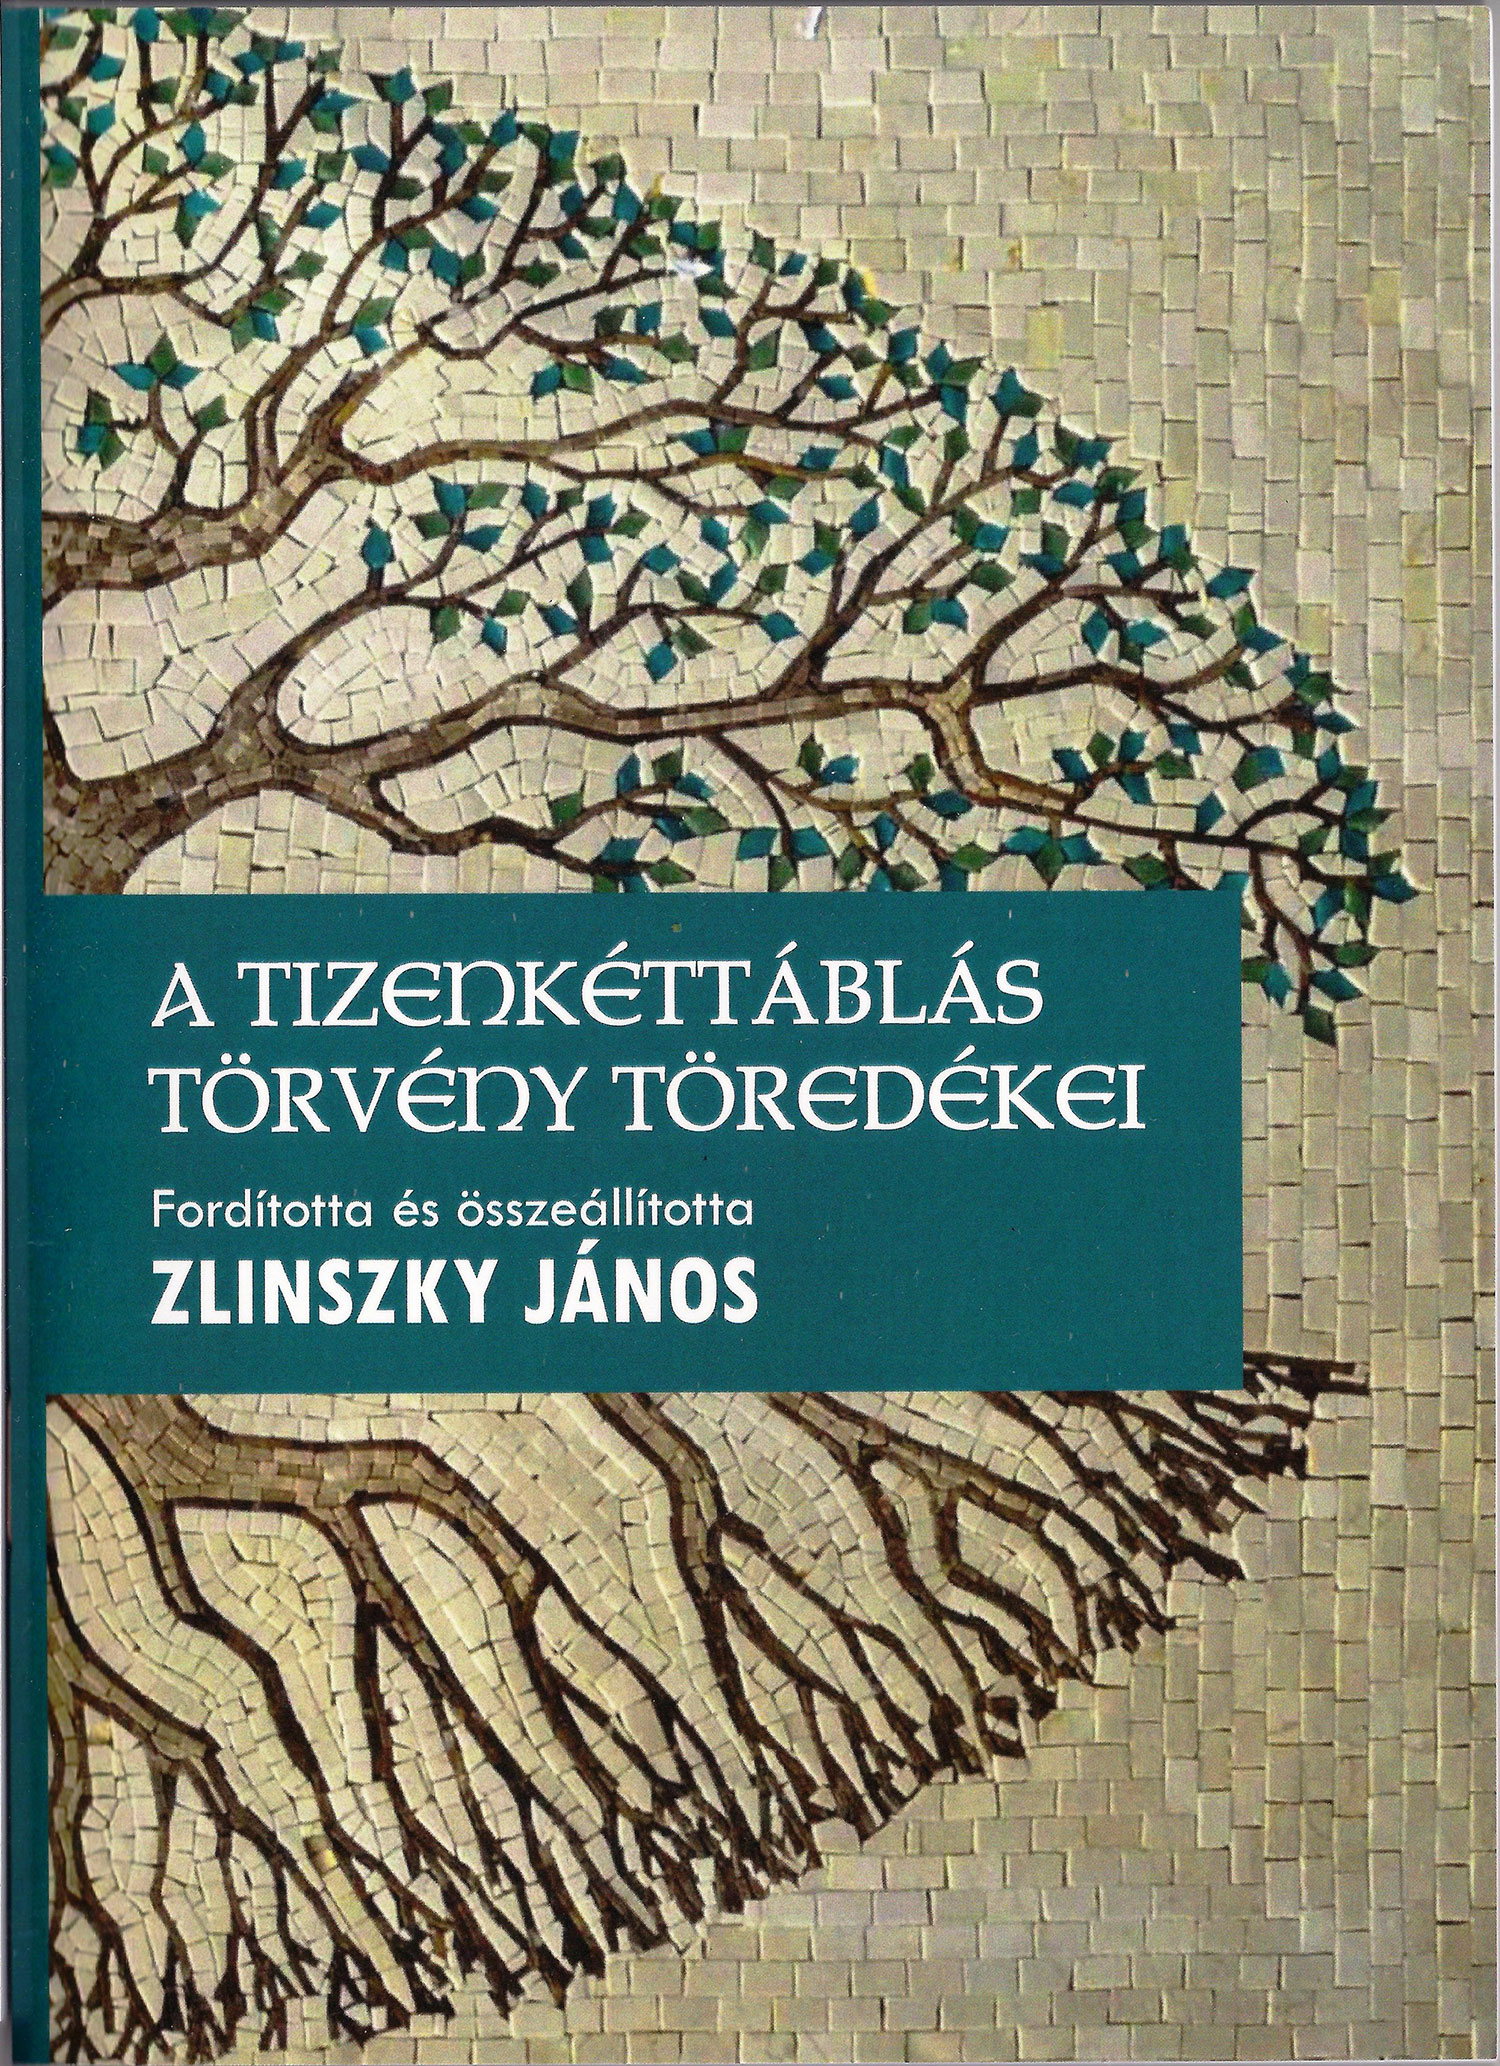 Zlinszky János (1928-2015) jogtudományi és közéleti munkássága